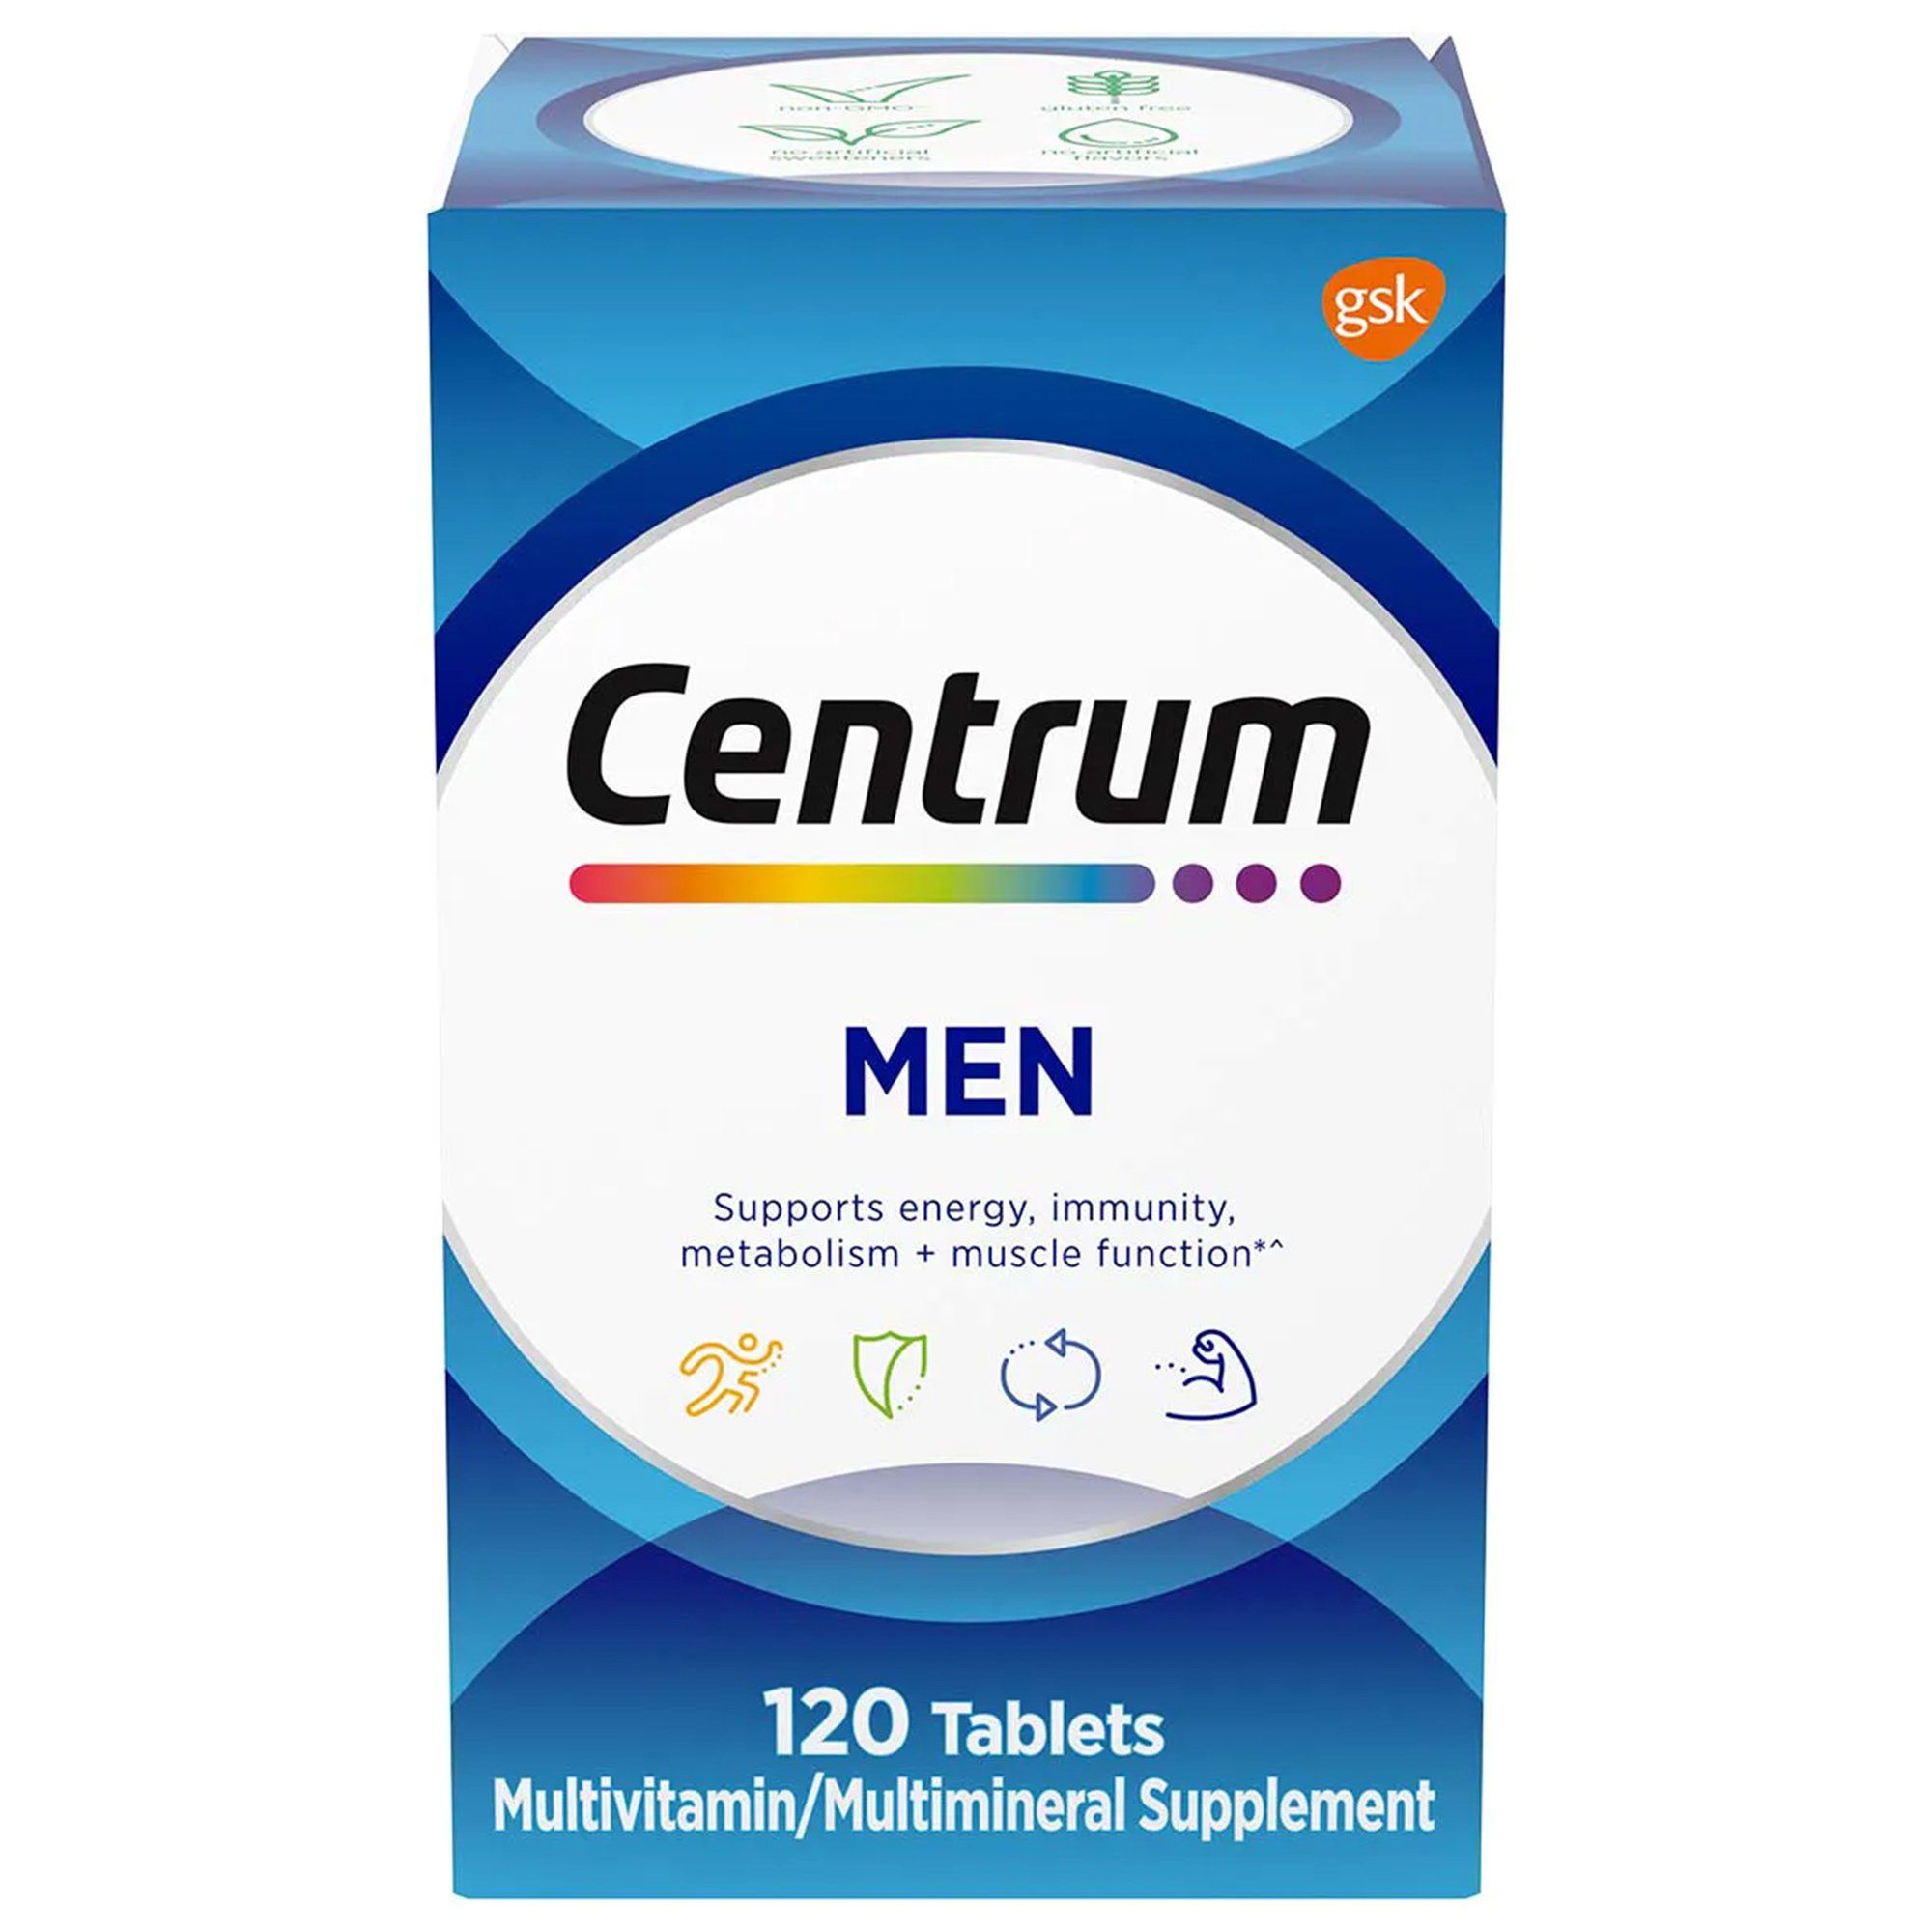 Centrum Mens Multivitamin/Multimineral Supplement Tablets - 120 ct